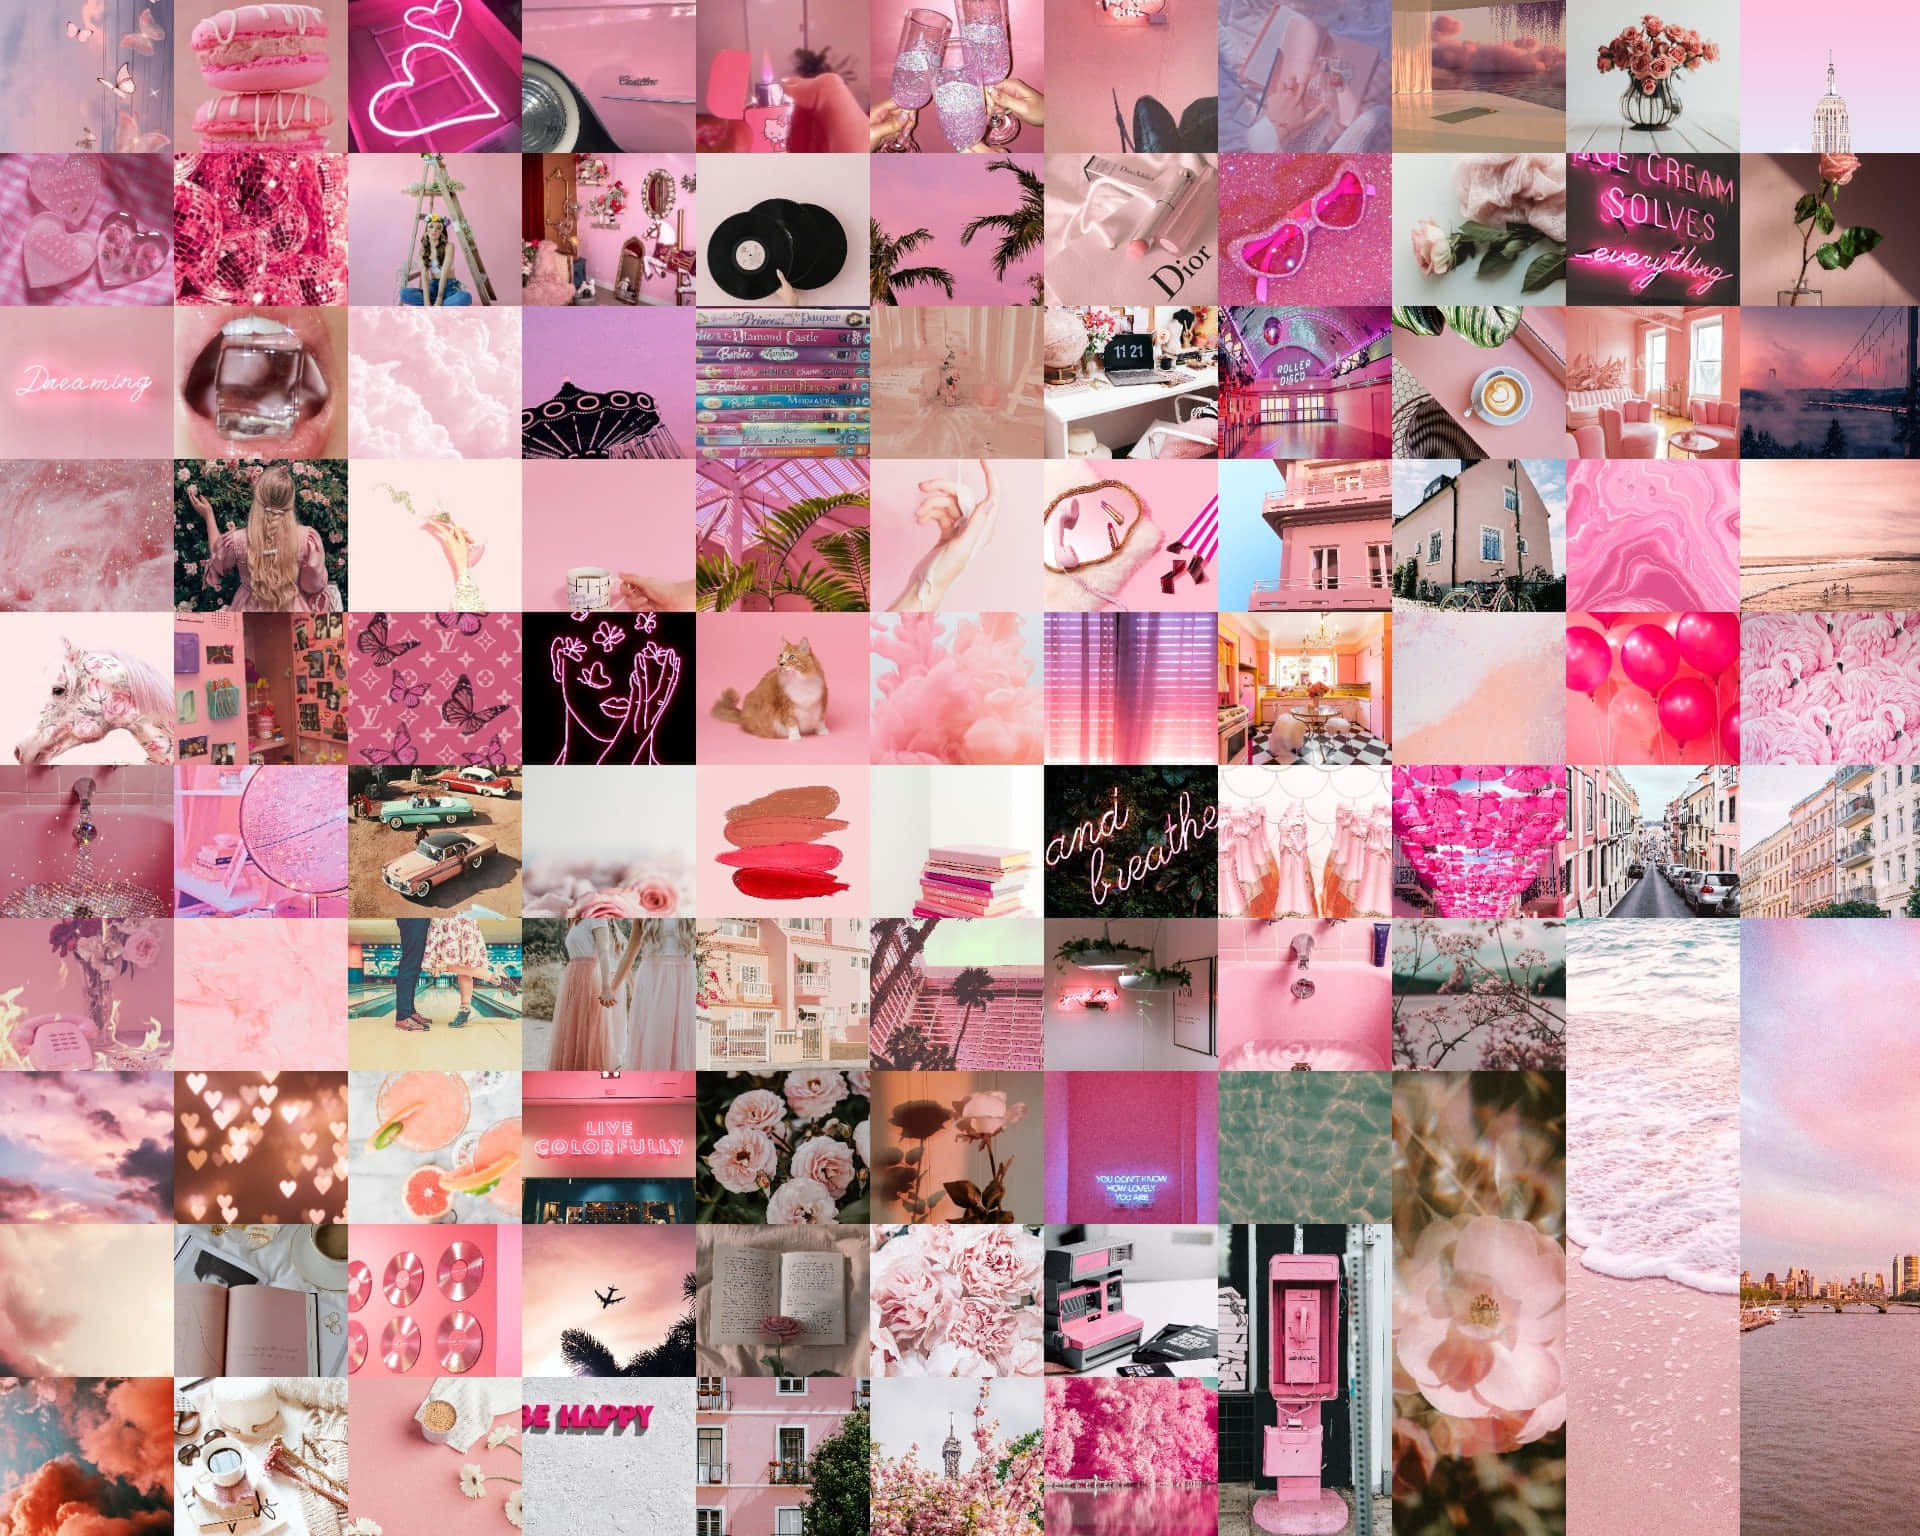 Sfondirosa, Sfondi Rosa, Sfondi Rosa, Sfondi Rosa, Sfondi Rosa, Sfondi Rosa, Sfondi Rosa, Sfondi Rosa Sfondo